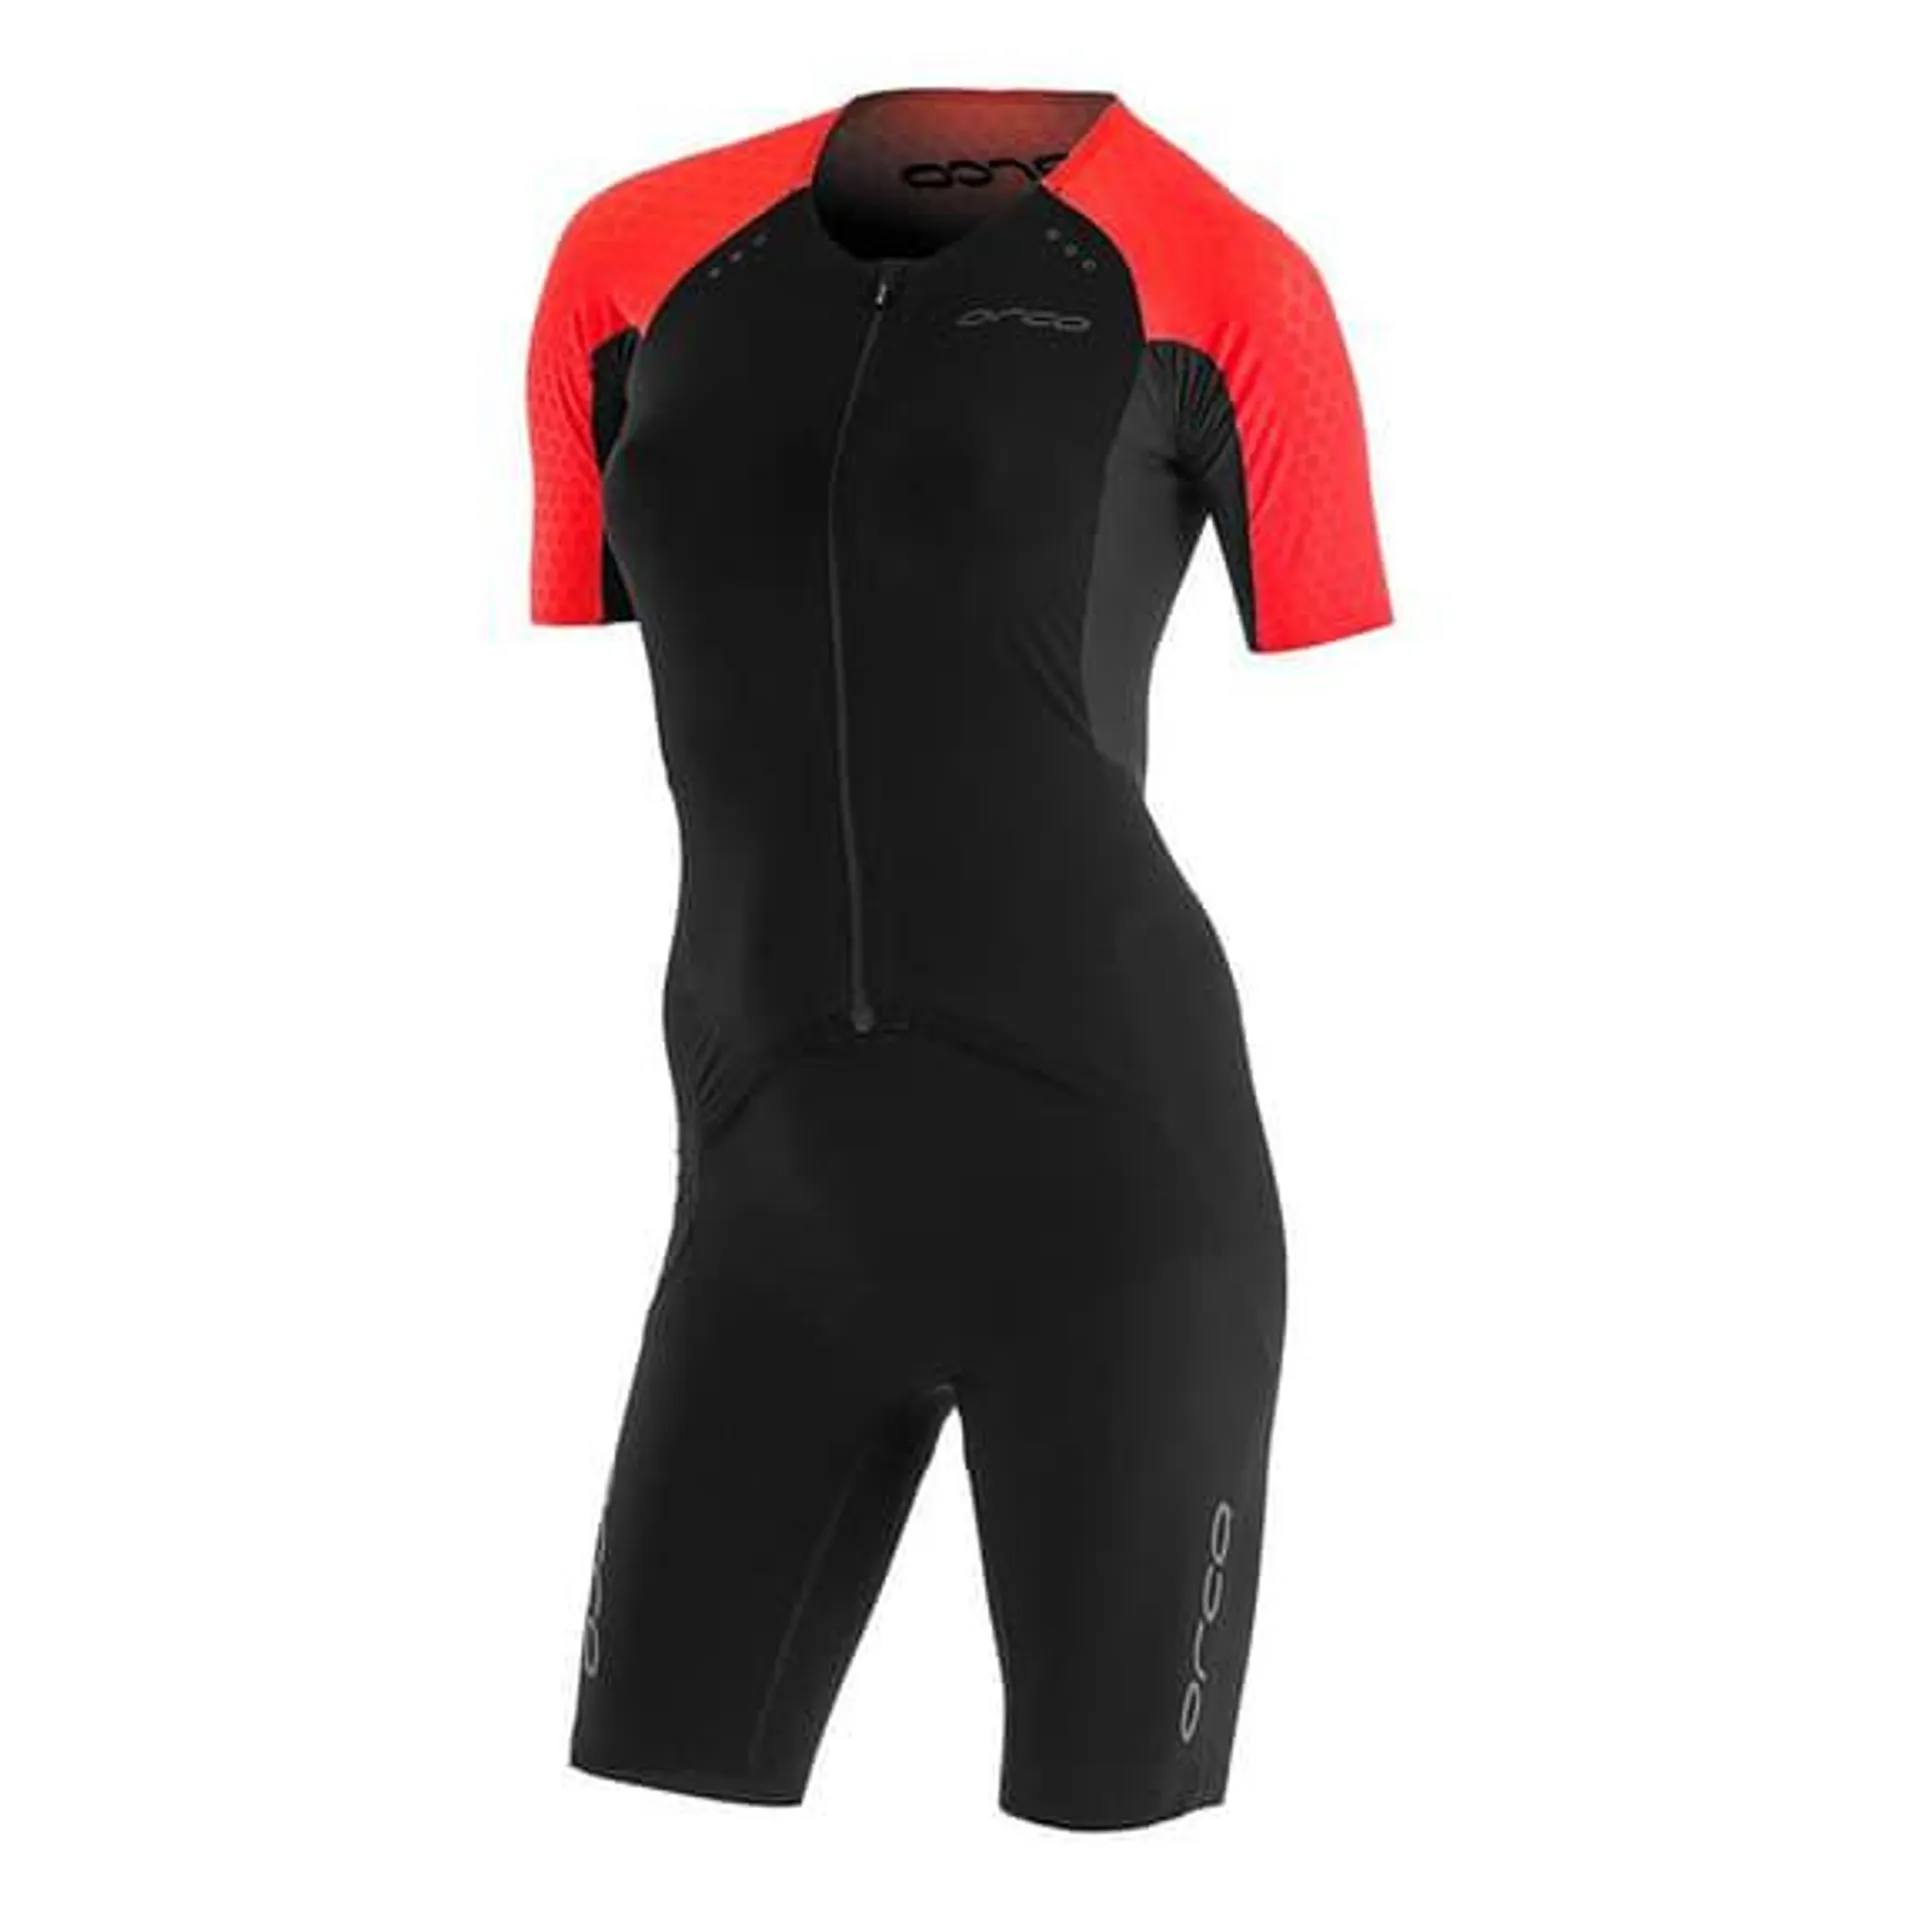 Combinaison de triathlon Orca RS1 Dream Kona manche courte noir rouge femme